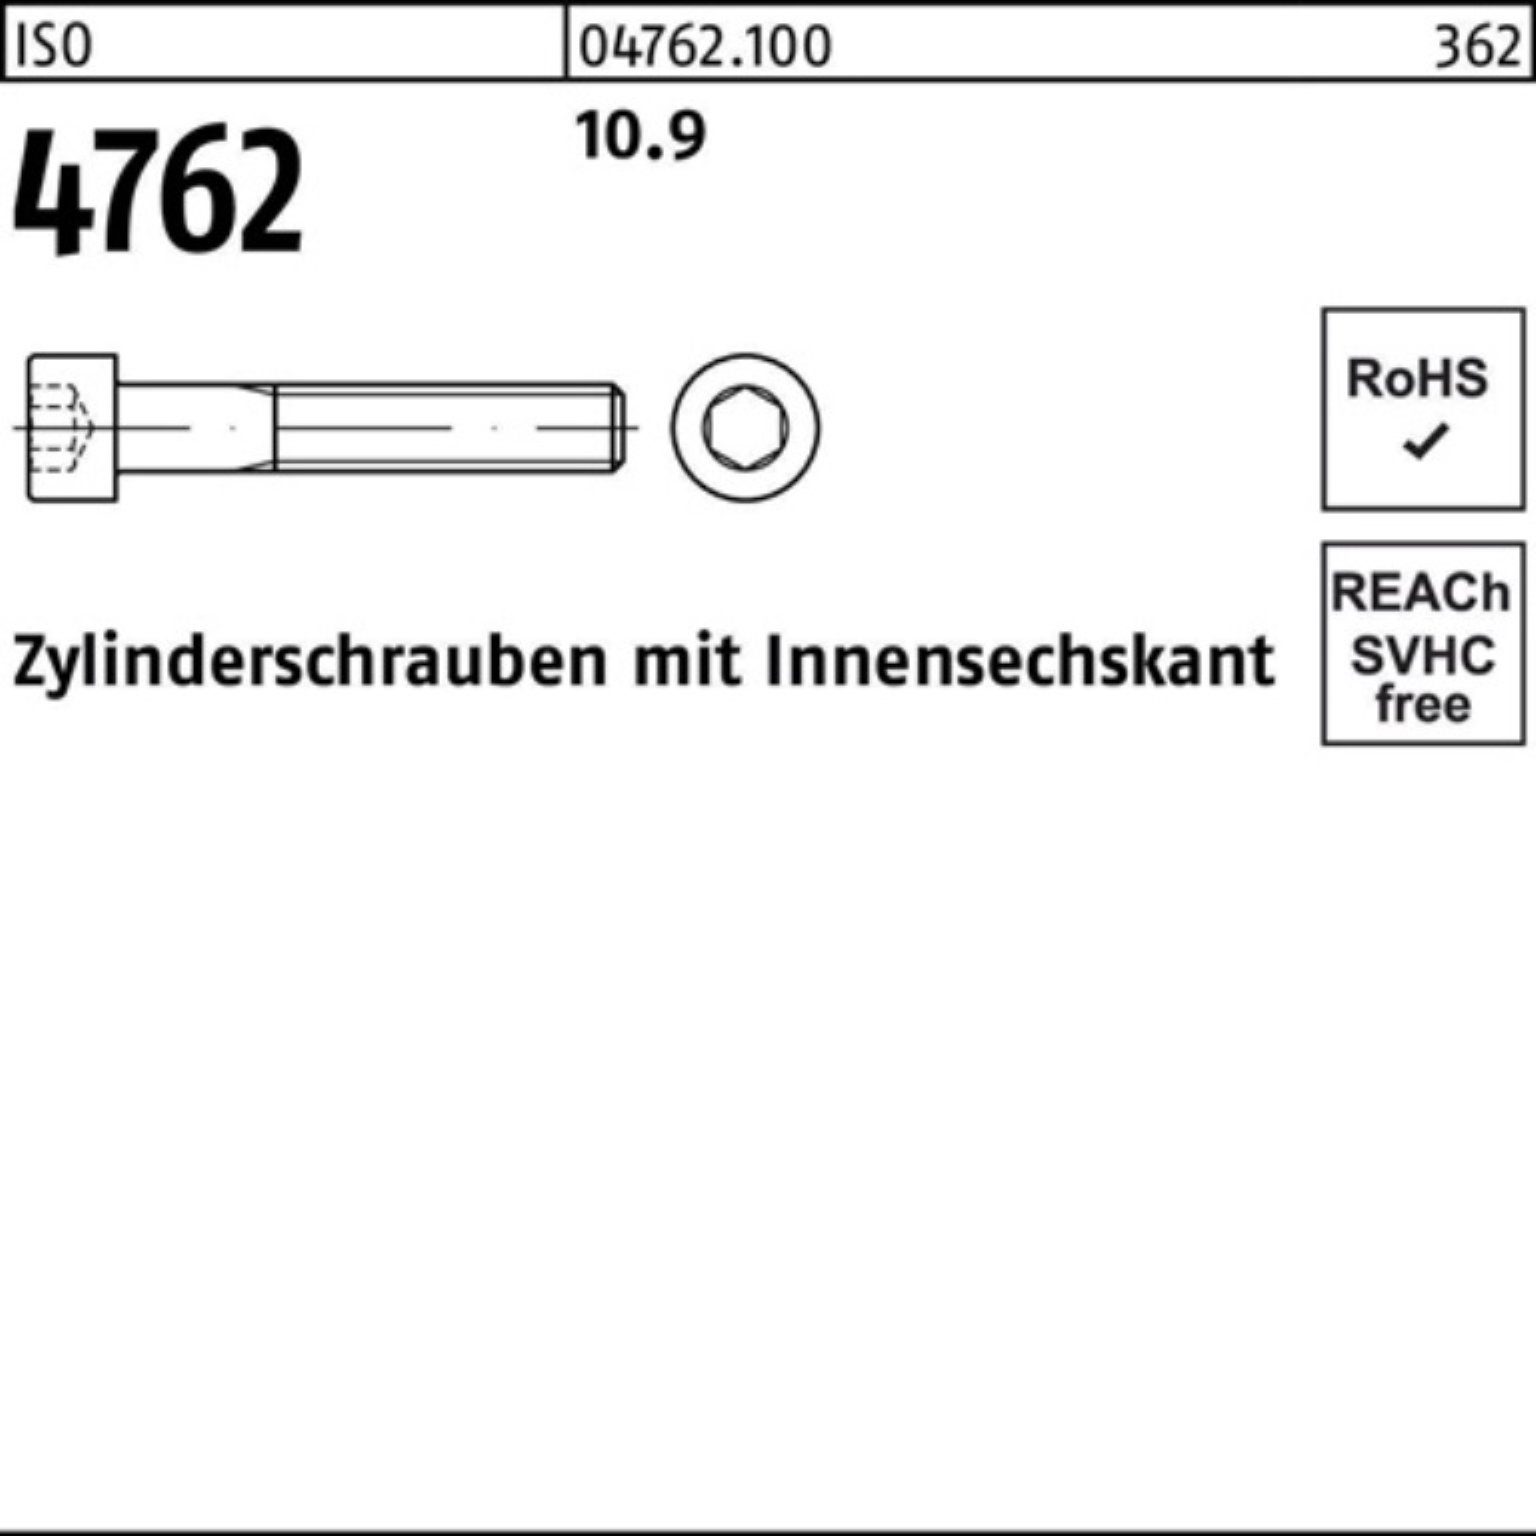 10.9 Reyher Innen-6kt M42x Zylinderschraube 1 160 Zylinderschraube 4762 Pack ISO 100er Stück